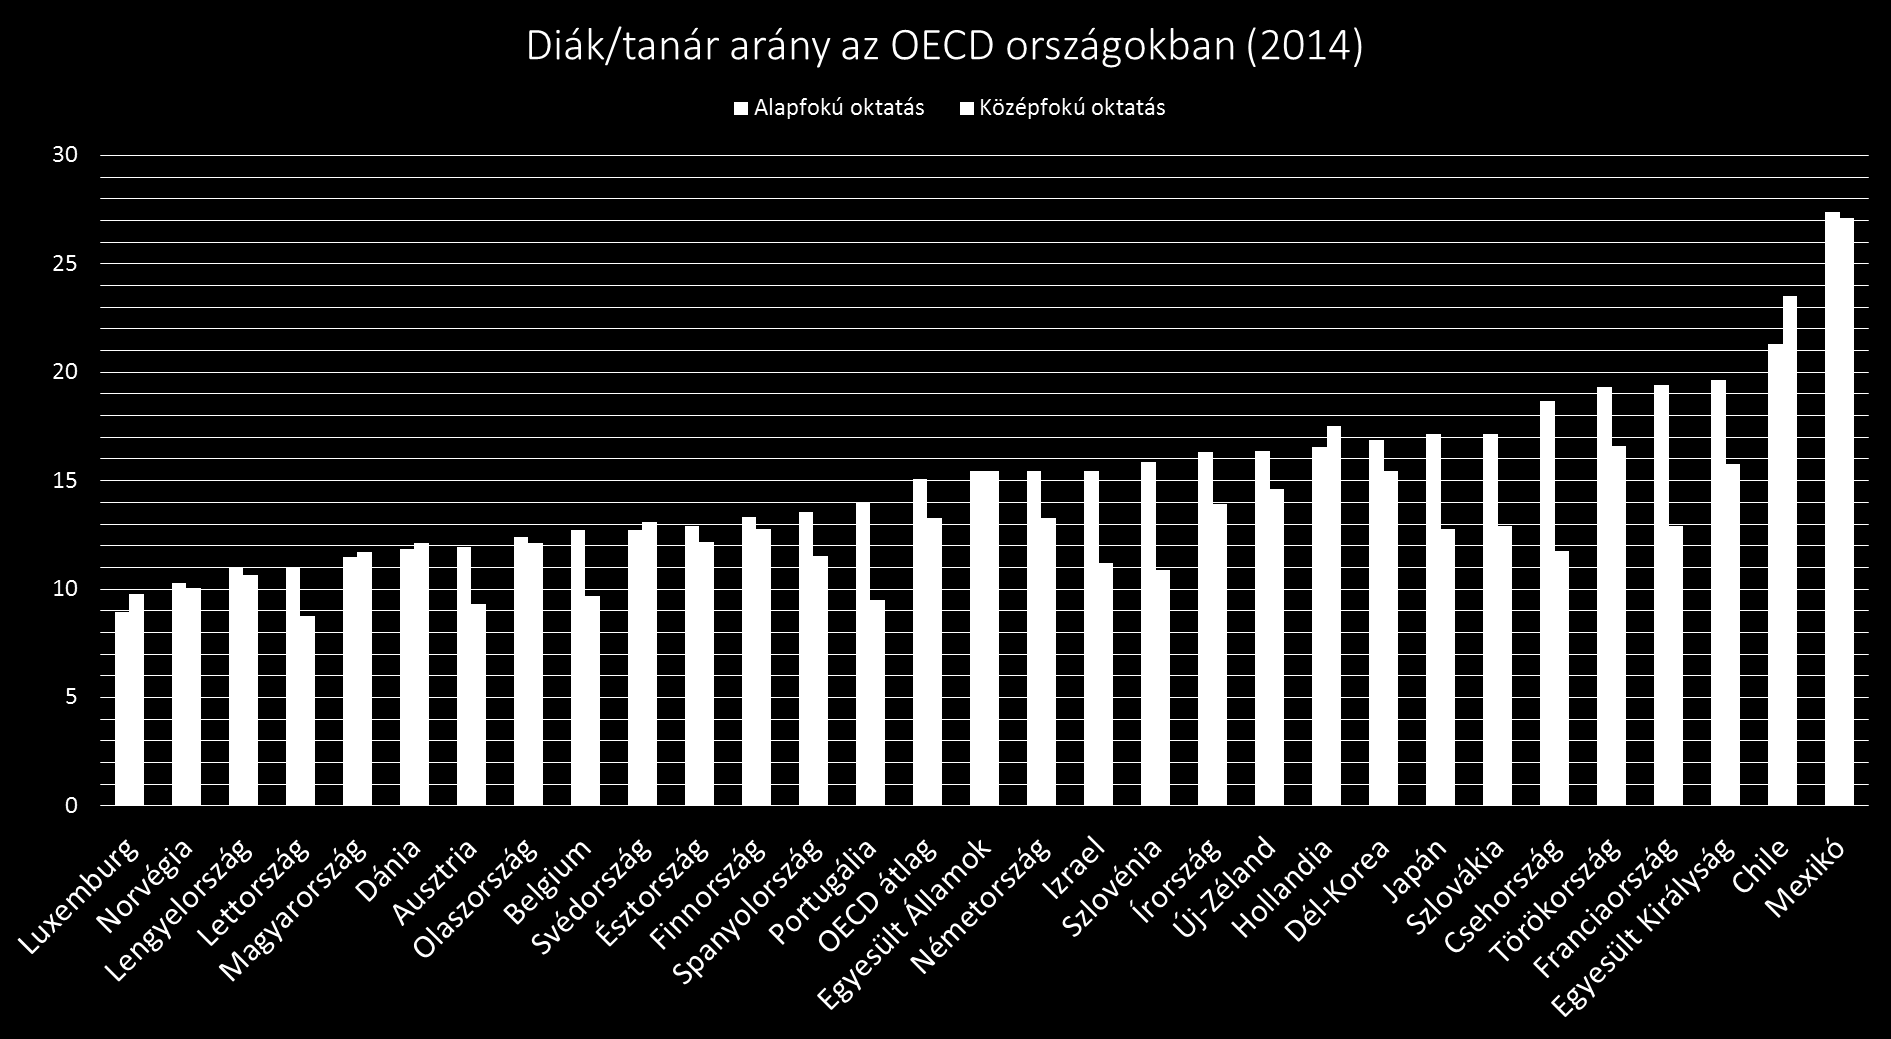 A magyar diák/tanár arány az OECD országok átlaga alatt van,